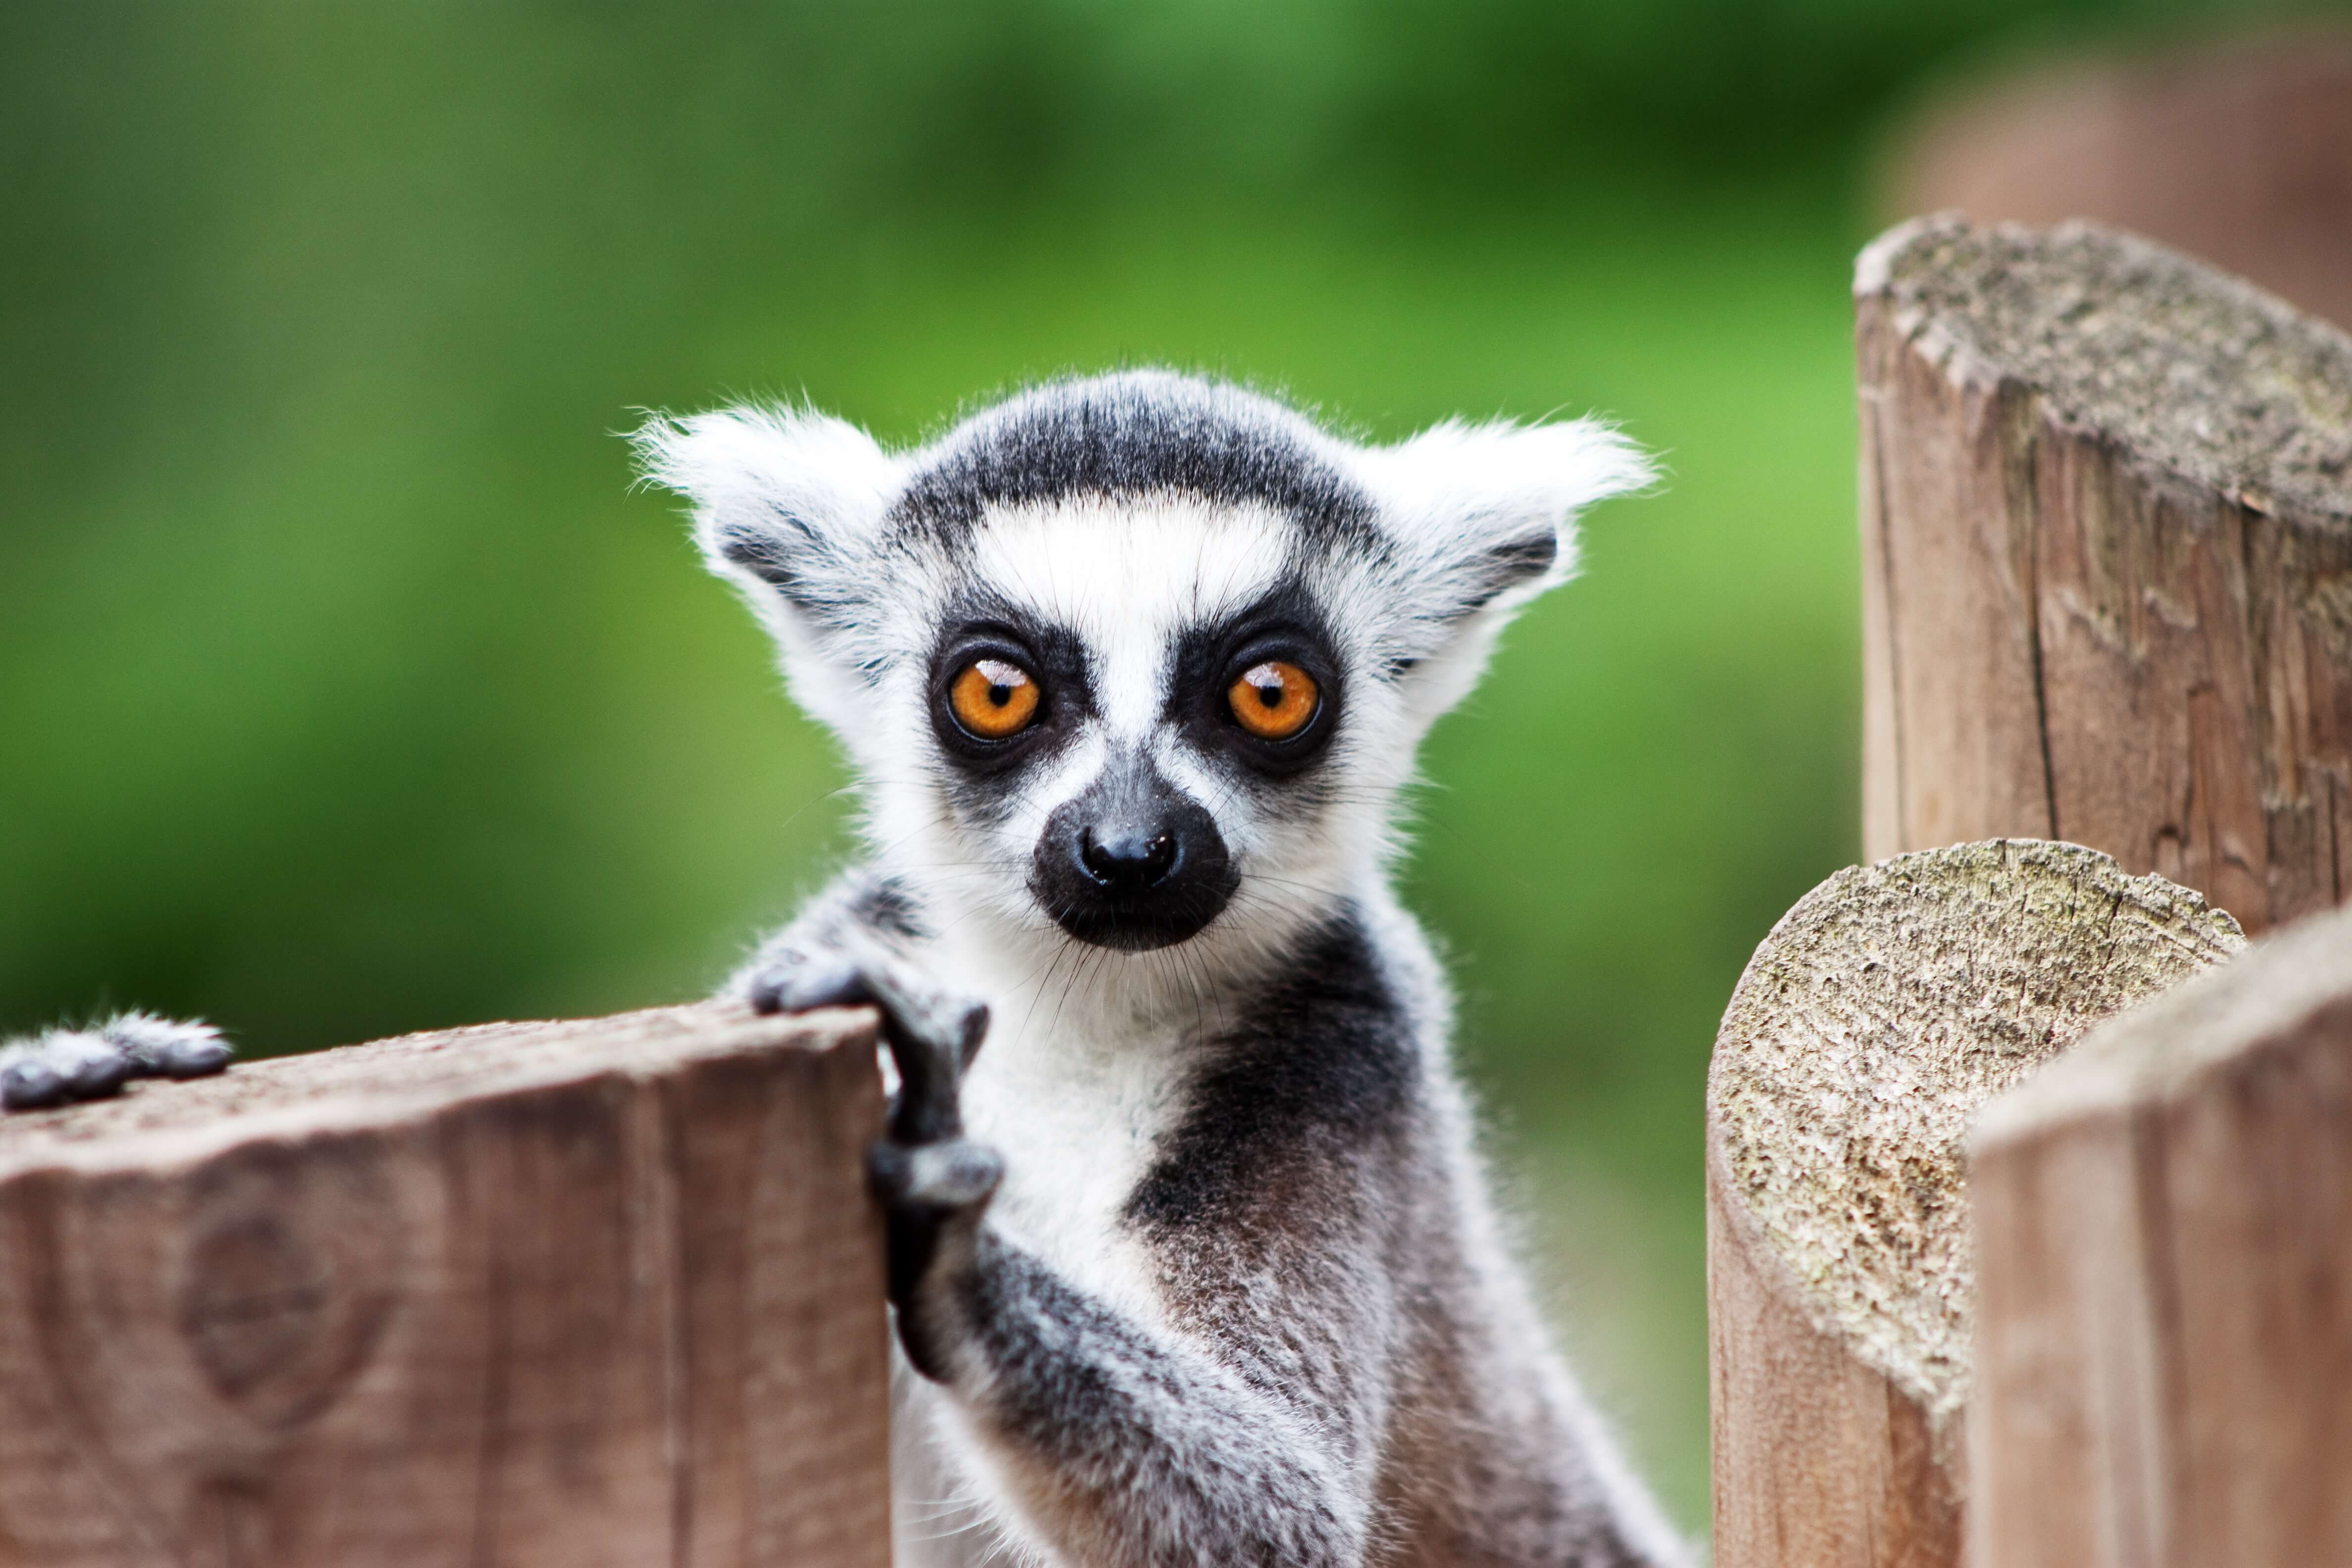 Lemur sitting near a wood